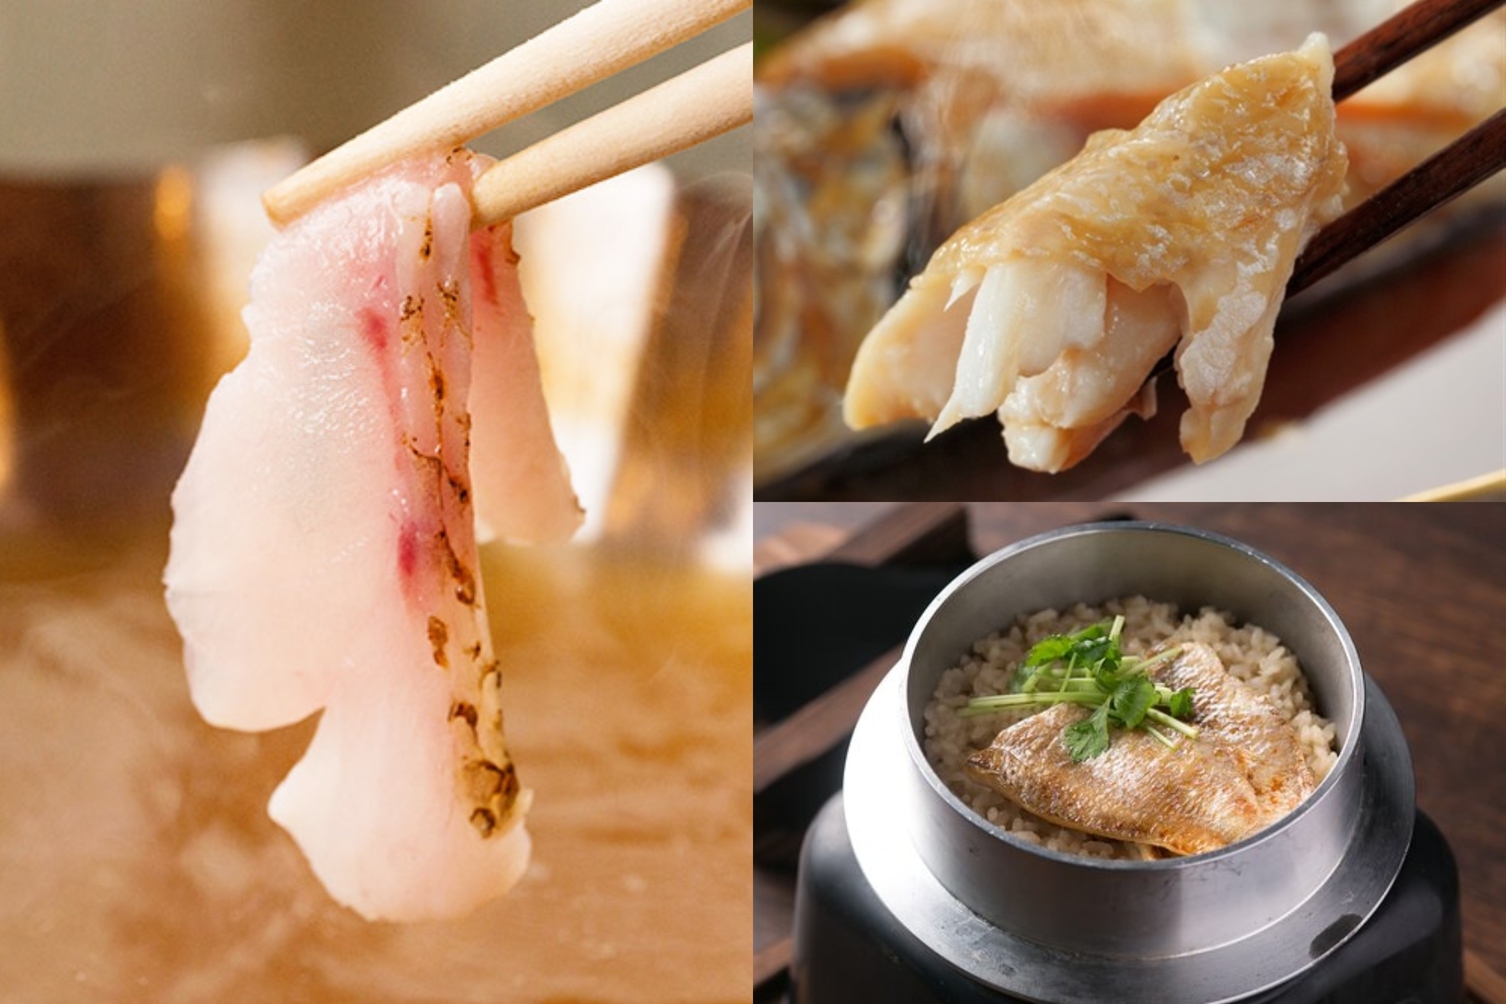 のどぐろのしゃぶしゃぶと煮付け釜飯のノドグロ三昧日本海会席